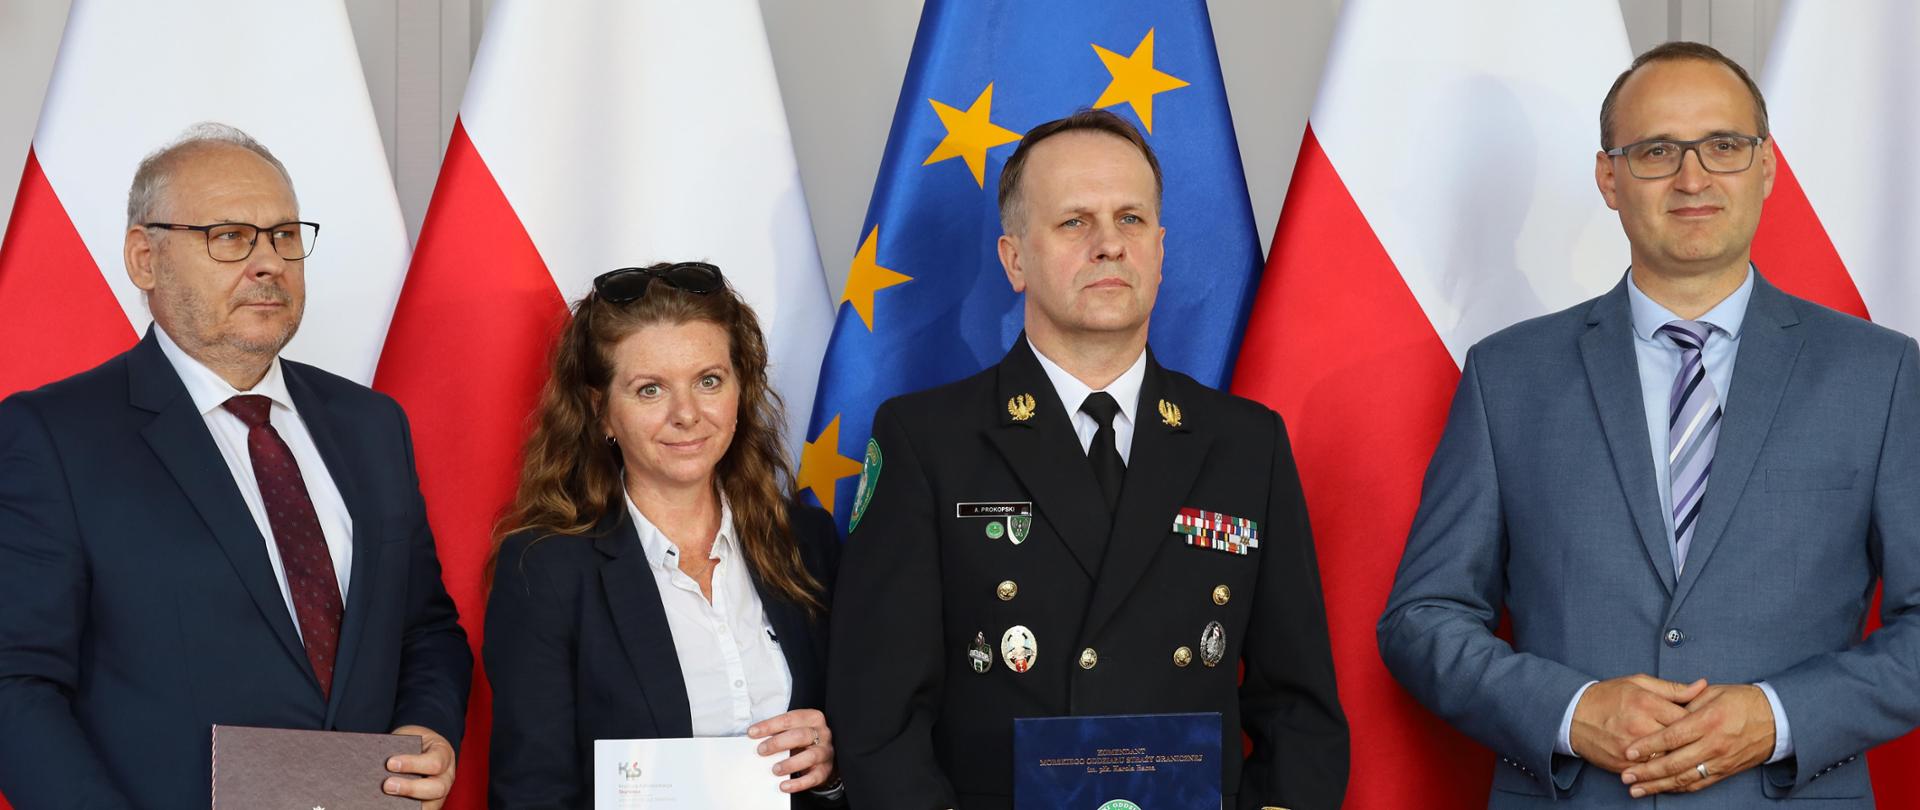 Czterech dorosłych ludzi stojących na tle flag Polski i Unii Europejskiej. Osoby na zdjęciu są ubrane formalnie, a troje z nich trzyma dokument.